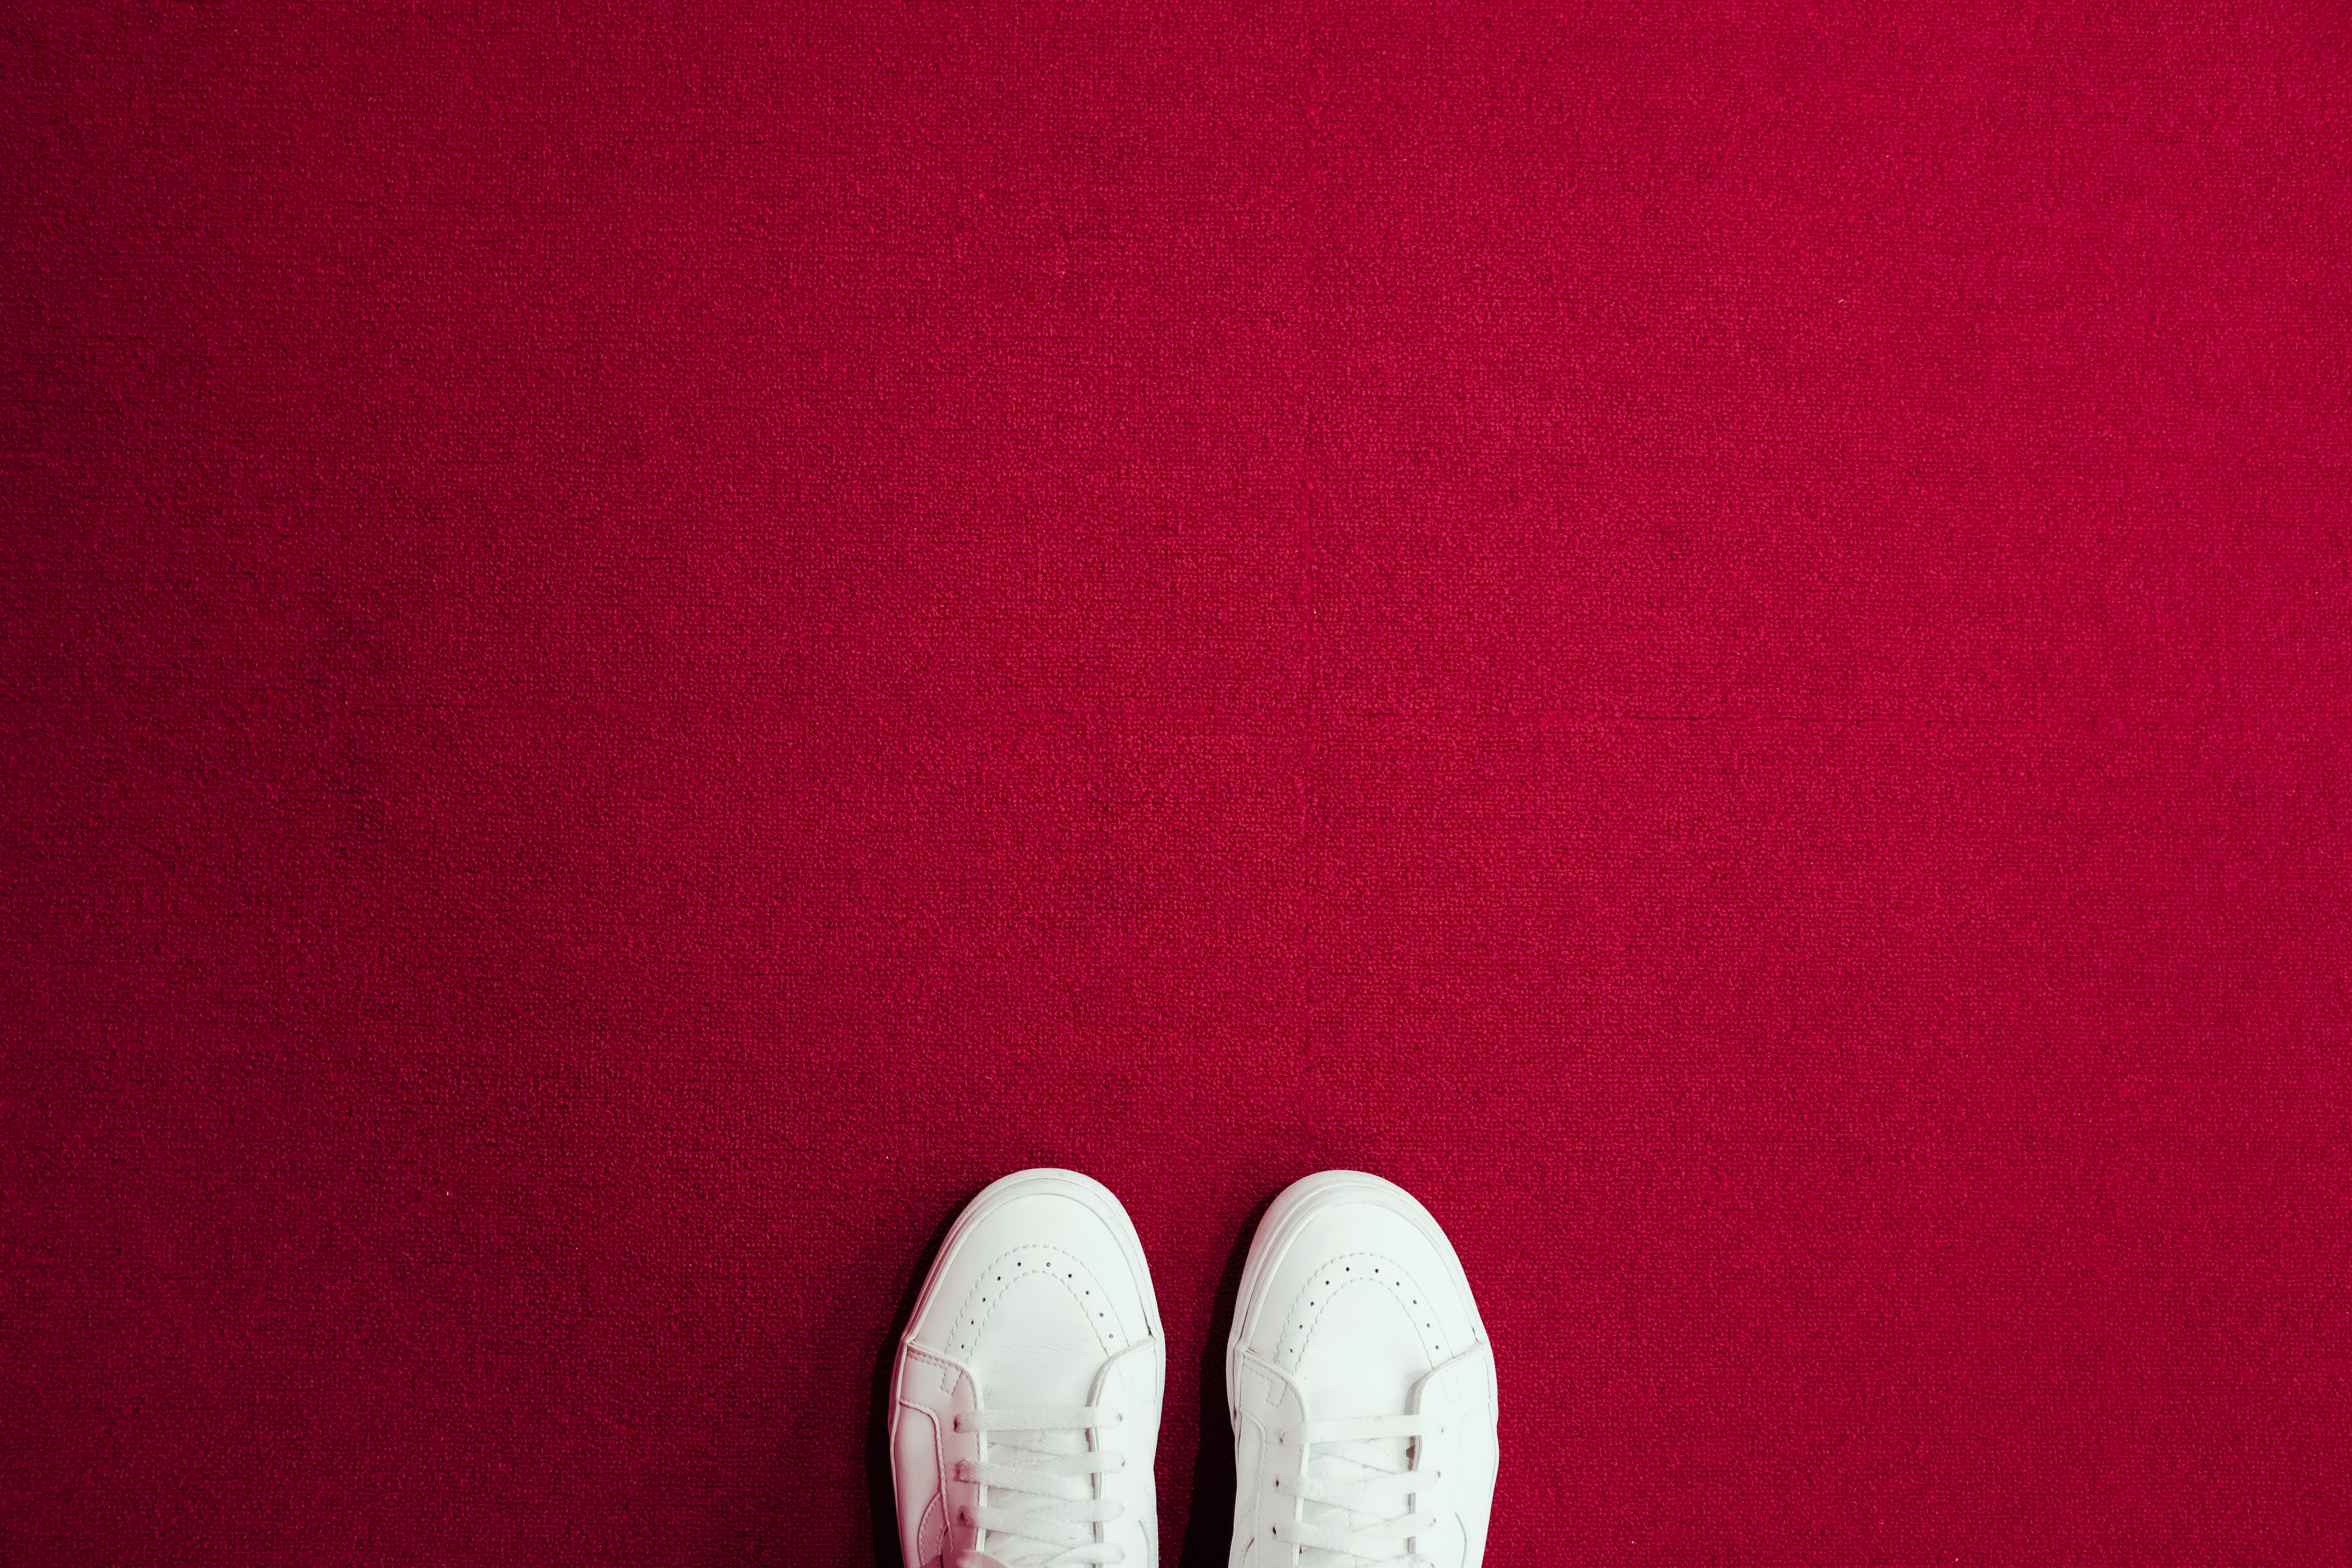 minimalism, red, legs, sneakers, carpet